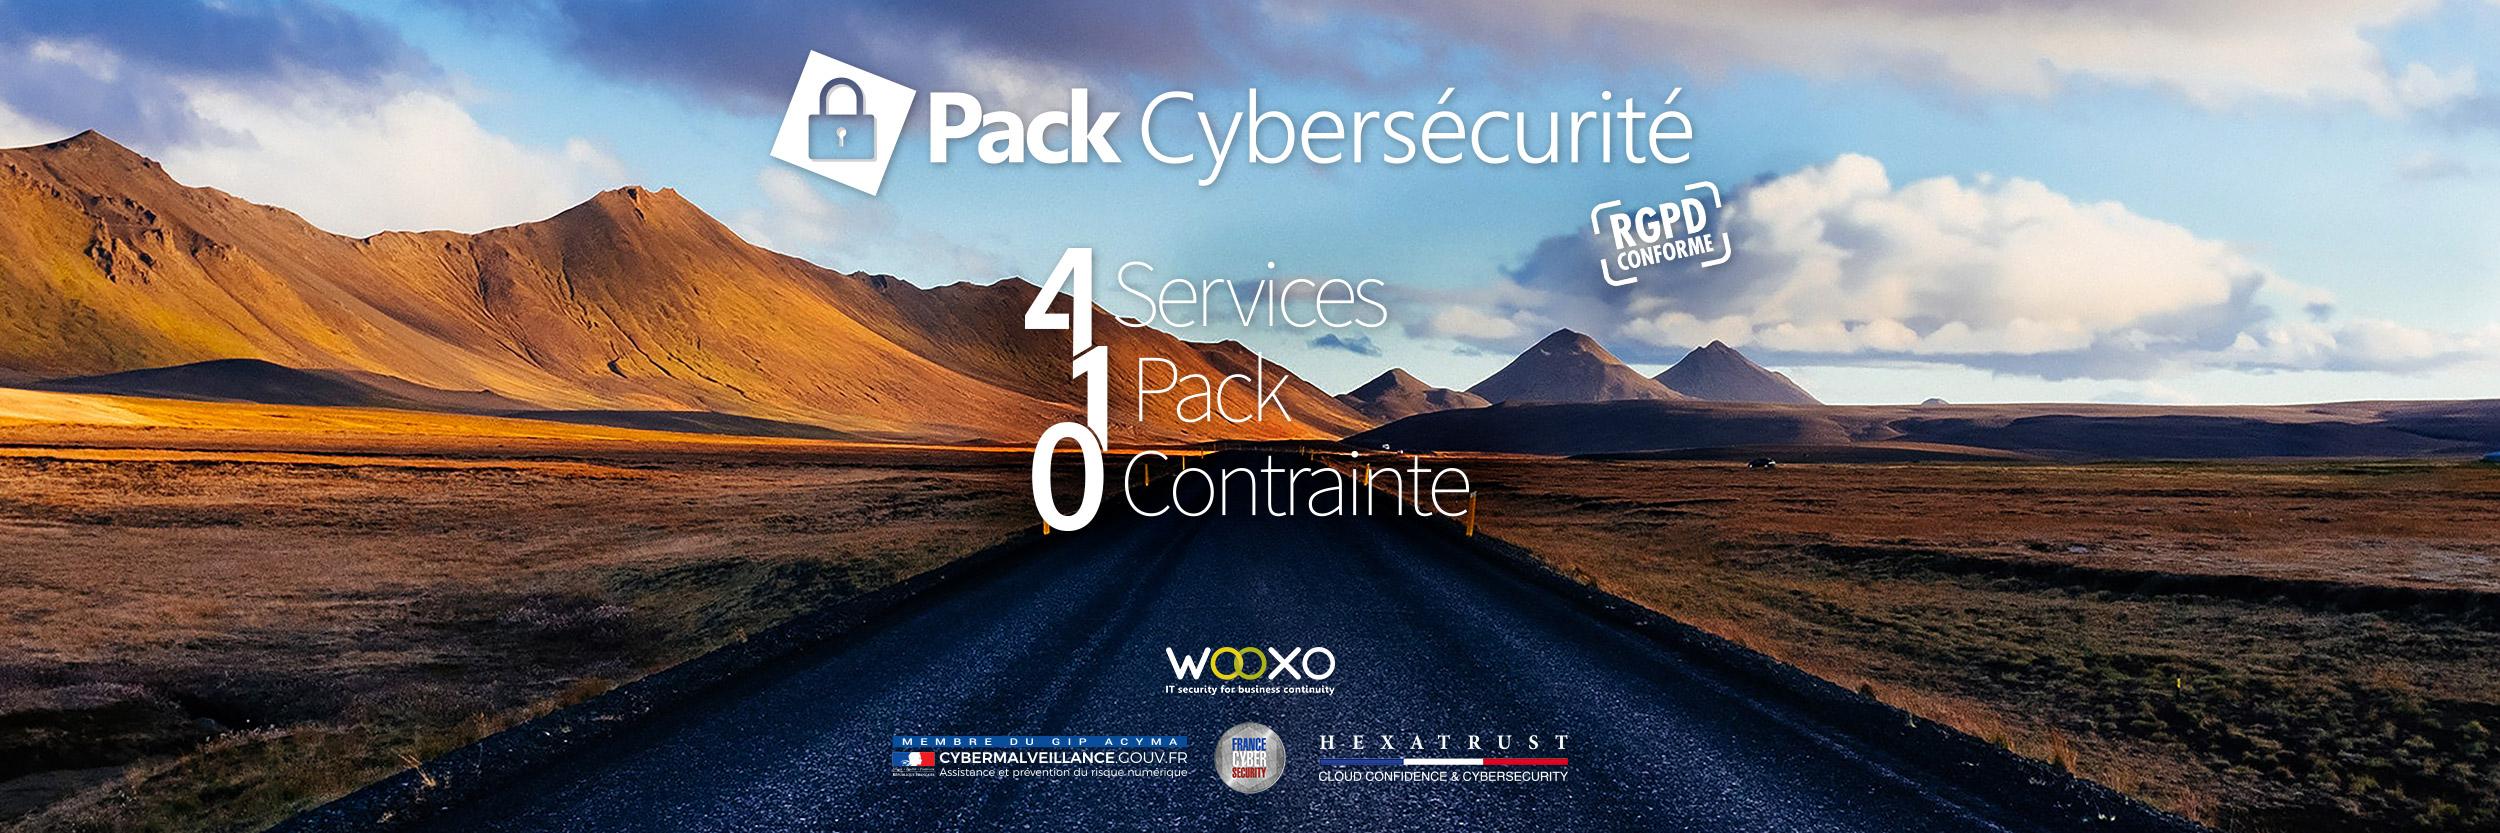 Avis Wooxo : Pack Cybersécurité pour TPE/PME - Appvizer